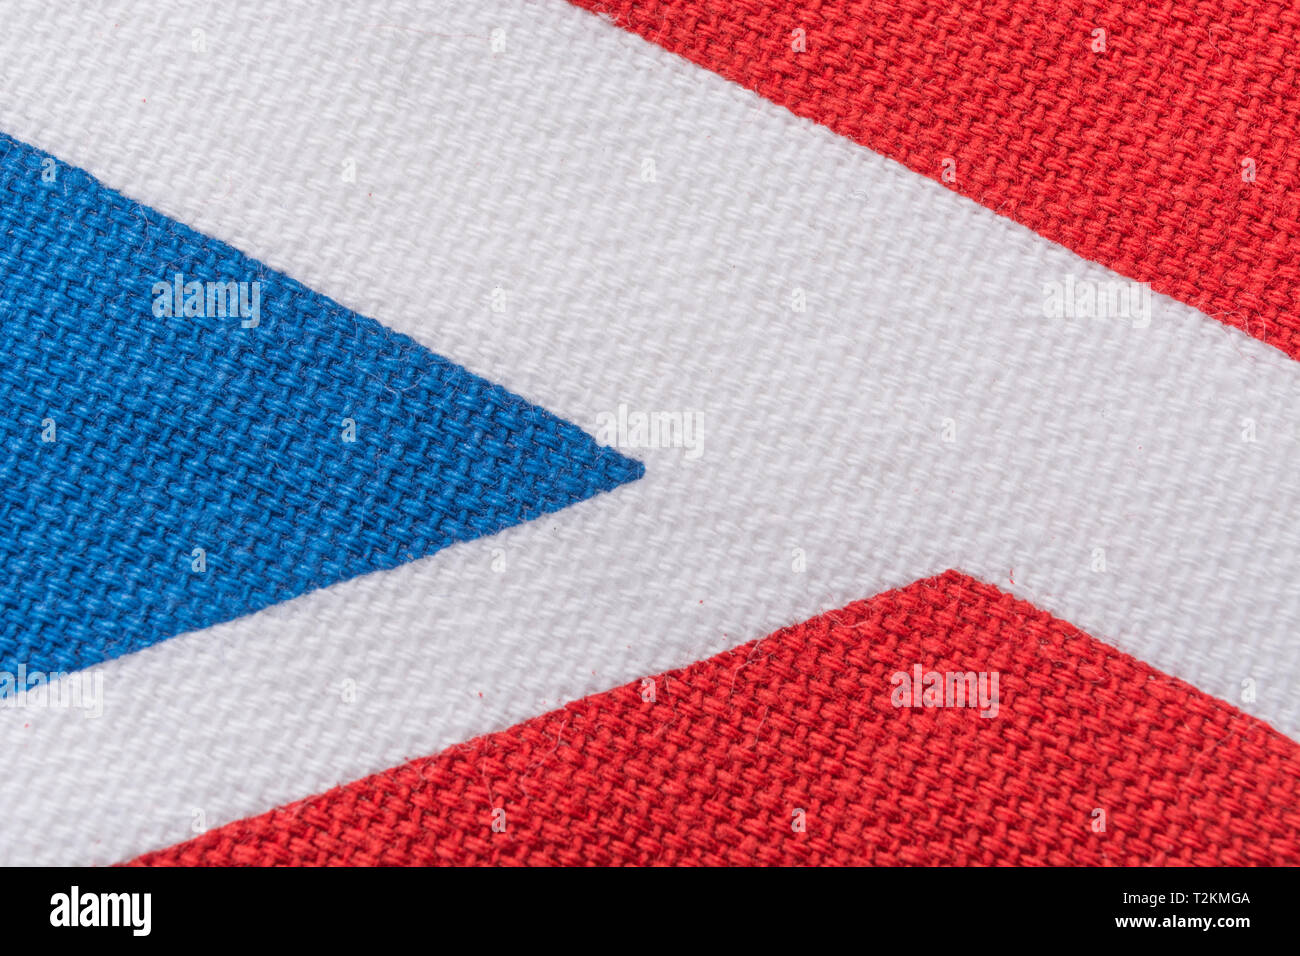 Macro de primeros planos de material de algodón estampado de Union Jack, que muestra hilos de colores, patrón de urdimbre y trama, filas regulares de puntos, resumen de Union Jack. Foto de stock